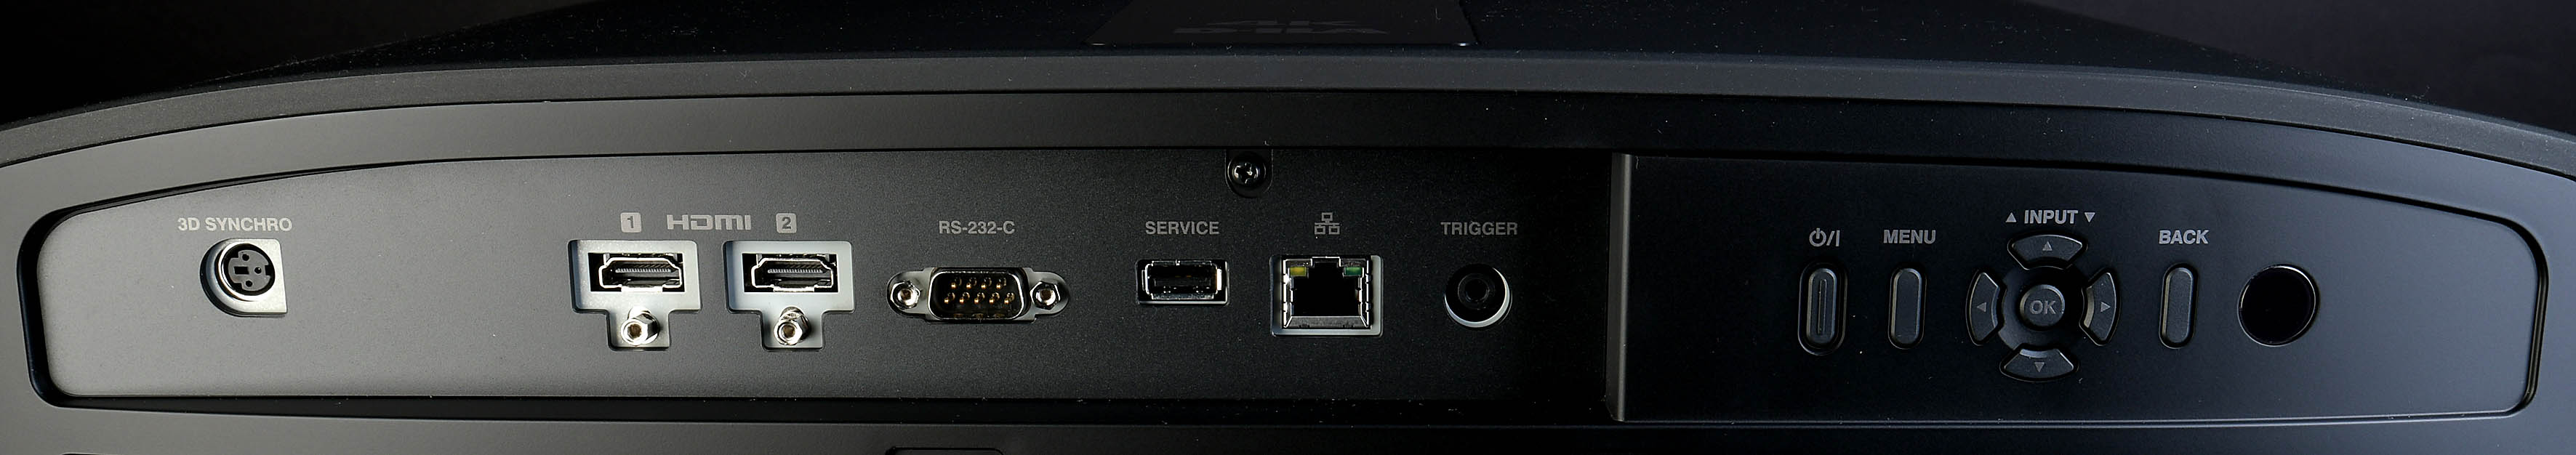 Foto: Michael B. Rehders Der JVC DLA-N7 besitzt alle Anschlüsse auf der Rückseite. An die zwei HDMI-Eingänge können AV-Receiver und Spielekonsole verbunden werden. Ein USB-Port ist für Updates vorgesehen, die fortan die Nutzer auch zu Hause durchführen können. Ganz links ist der Anschluss für den 3D-Emitter.